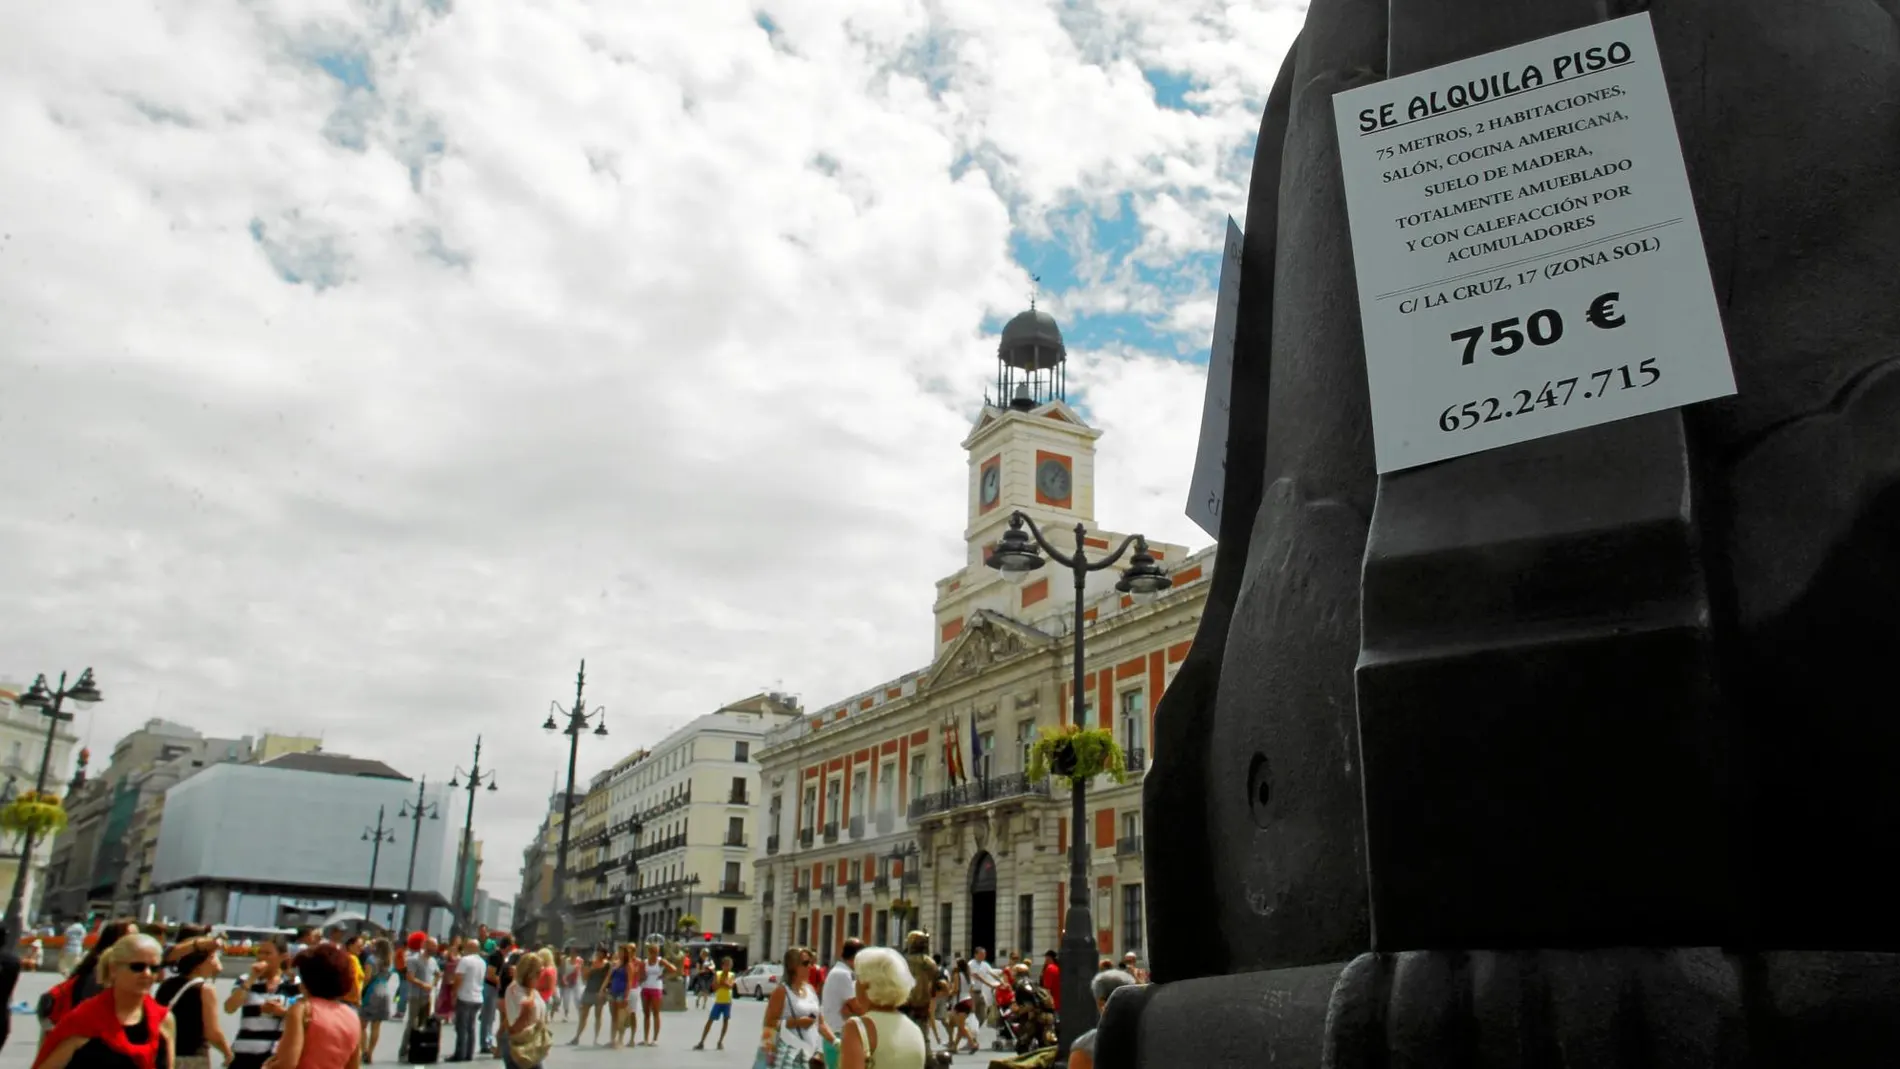 Airbnb actúa de intermediaria para alquilar viviendas entre particulares. En la imagen, la Puerta del Sol de Madrid